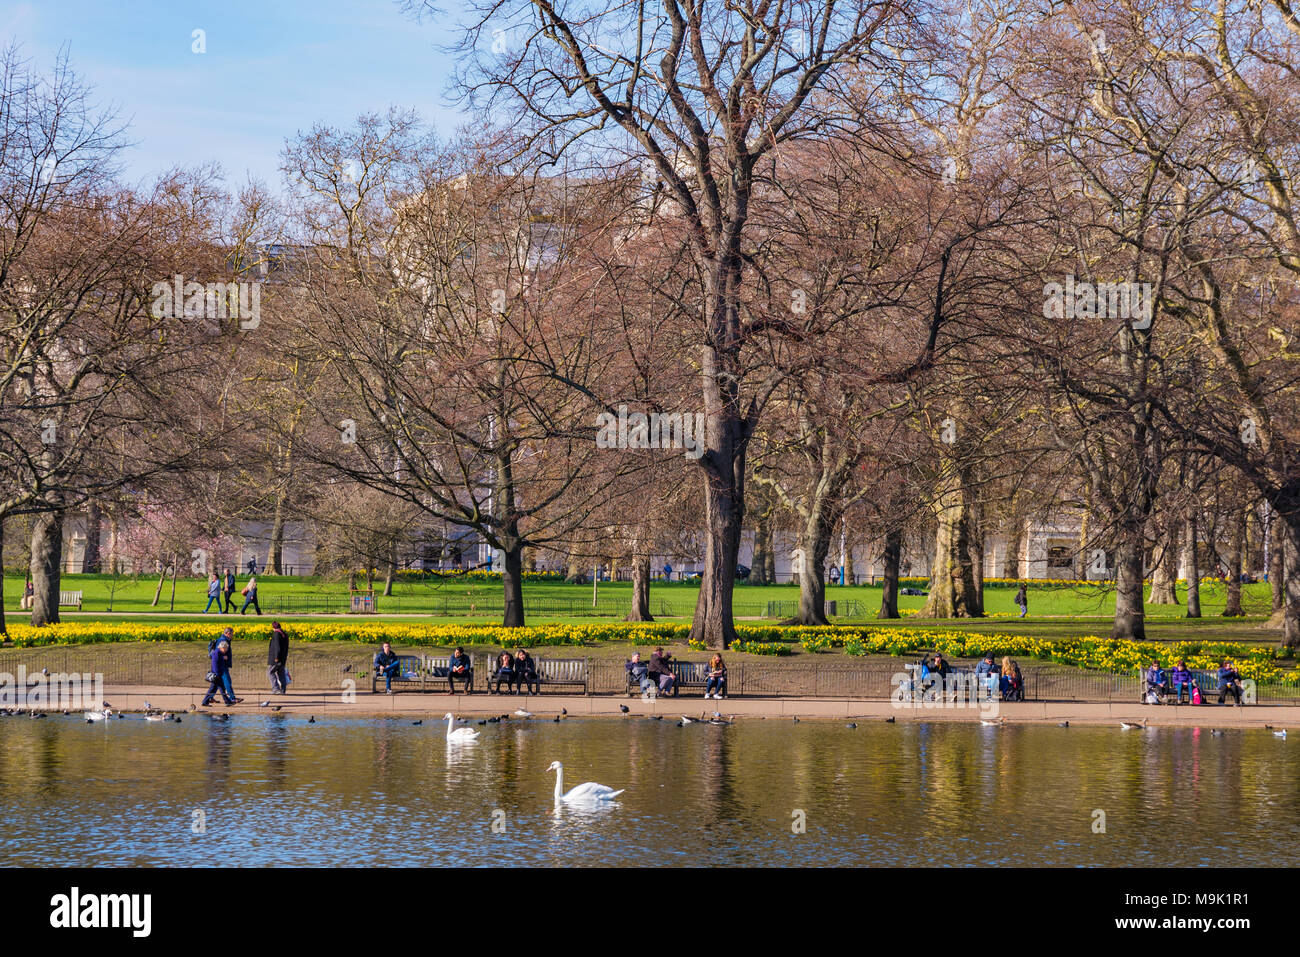 LONDON, GROSSBRITANNIEN, 21. März: Menschen sitzen am See in St. James's Park an einem sonnigen Tag im Frühjahr am 21. März 2018 in London. Stockfoto